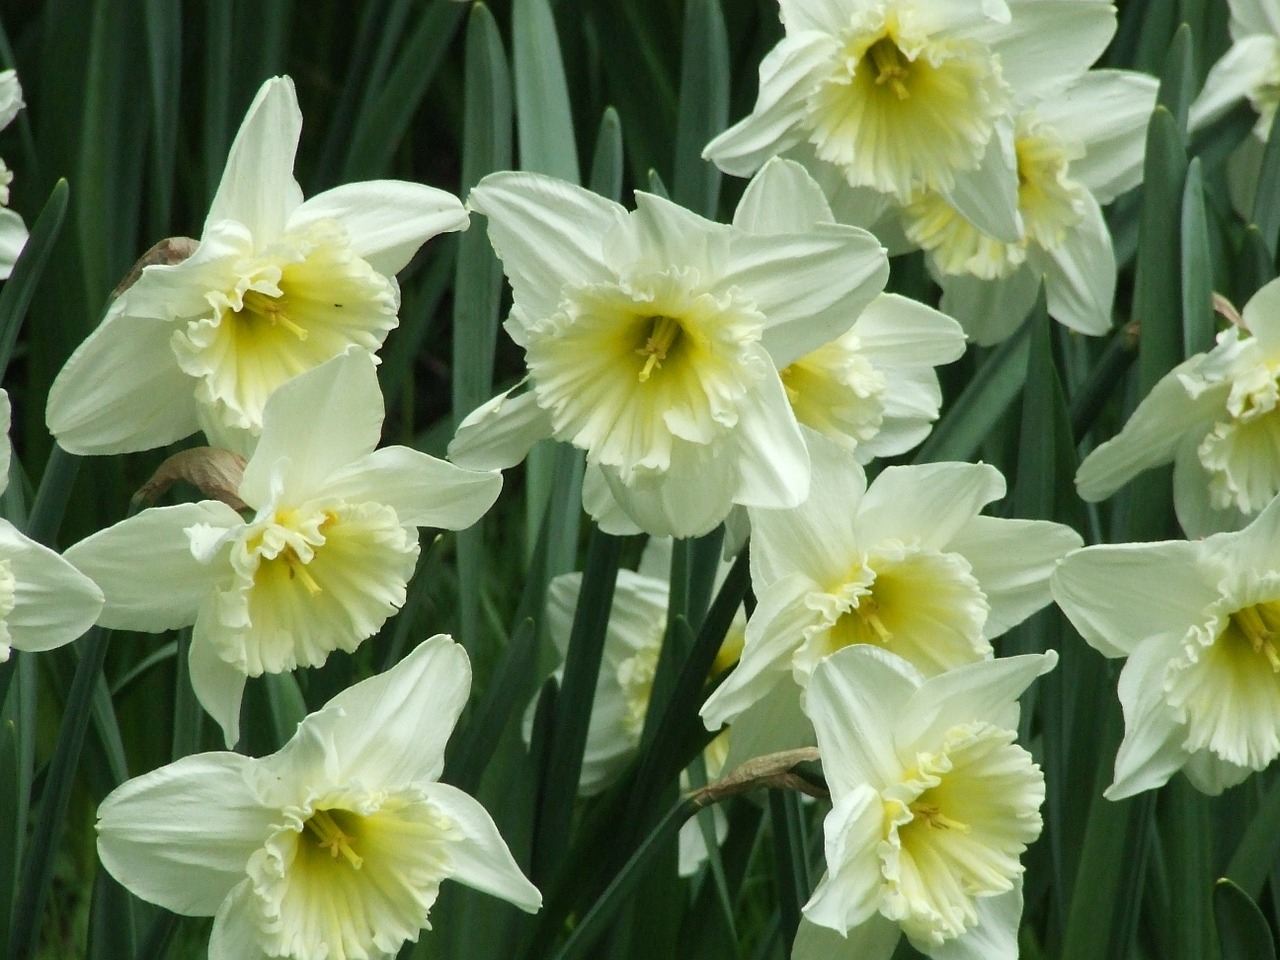 narcissus amaryllidaceae white daffodil free photo